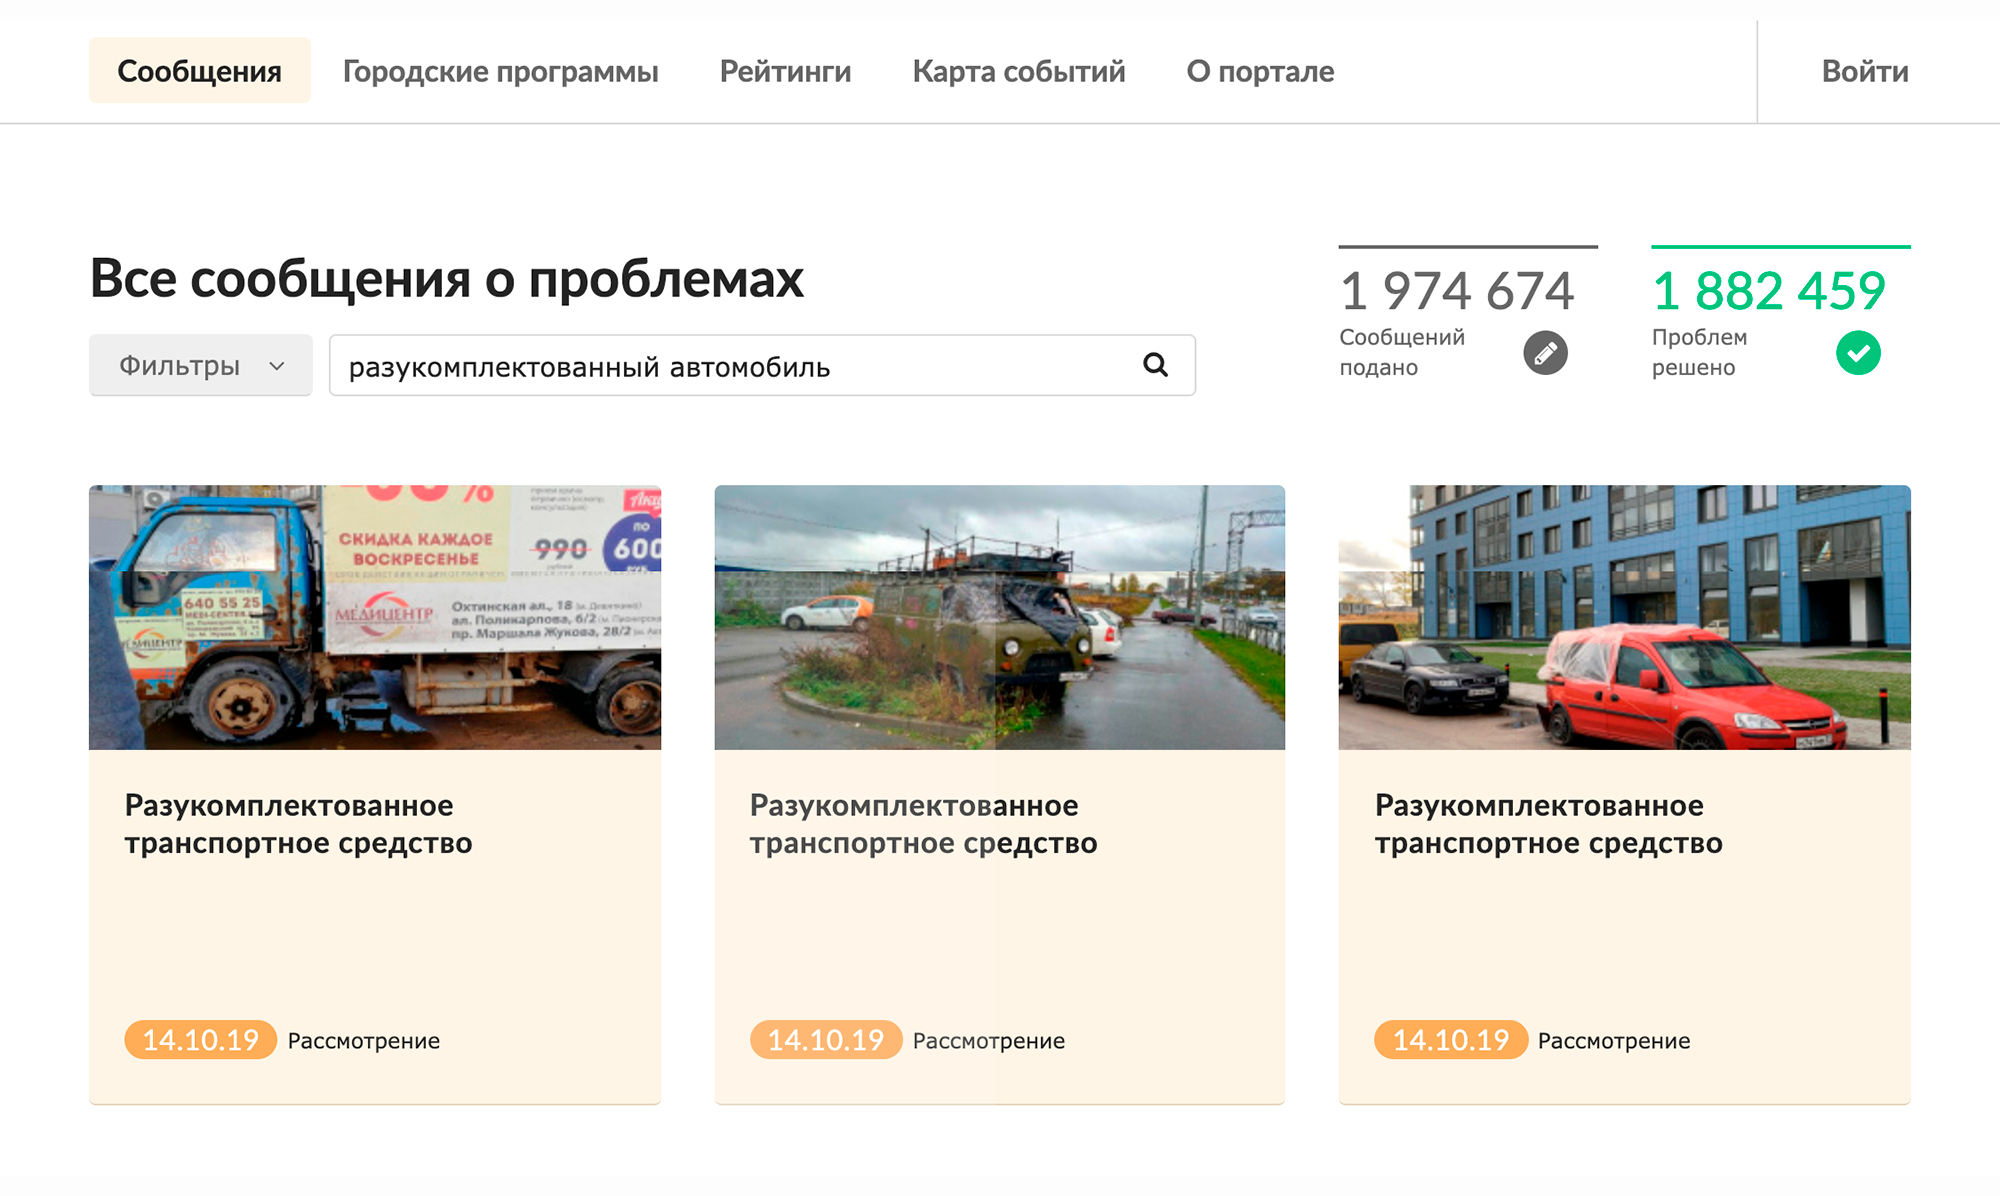 В Санкт-Петербурге тоже есть подобный портал, где можно пожаловаться на бесхозные автомобили